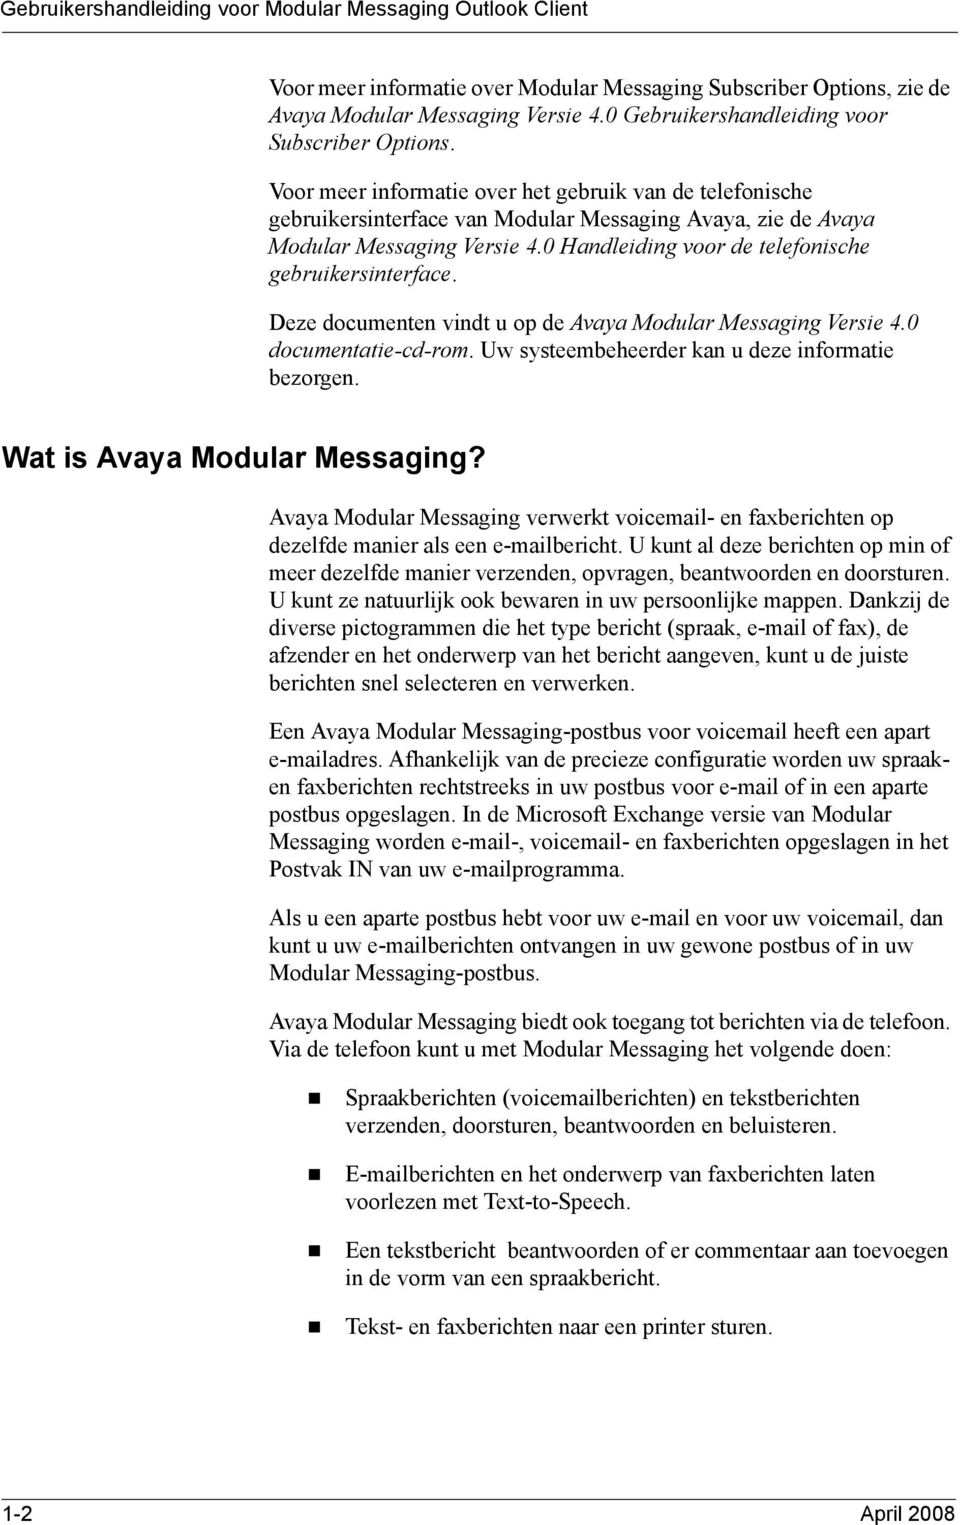 0 Handleiding voor de telefonische gebruikersinterface. Deze documenten vindt u op de Avaya Modular Messaging Versie 4.0 documentatie-cd-rom. Uw systeembeheerder kan u deze informatie bezorgen.